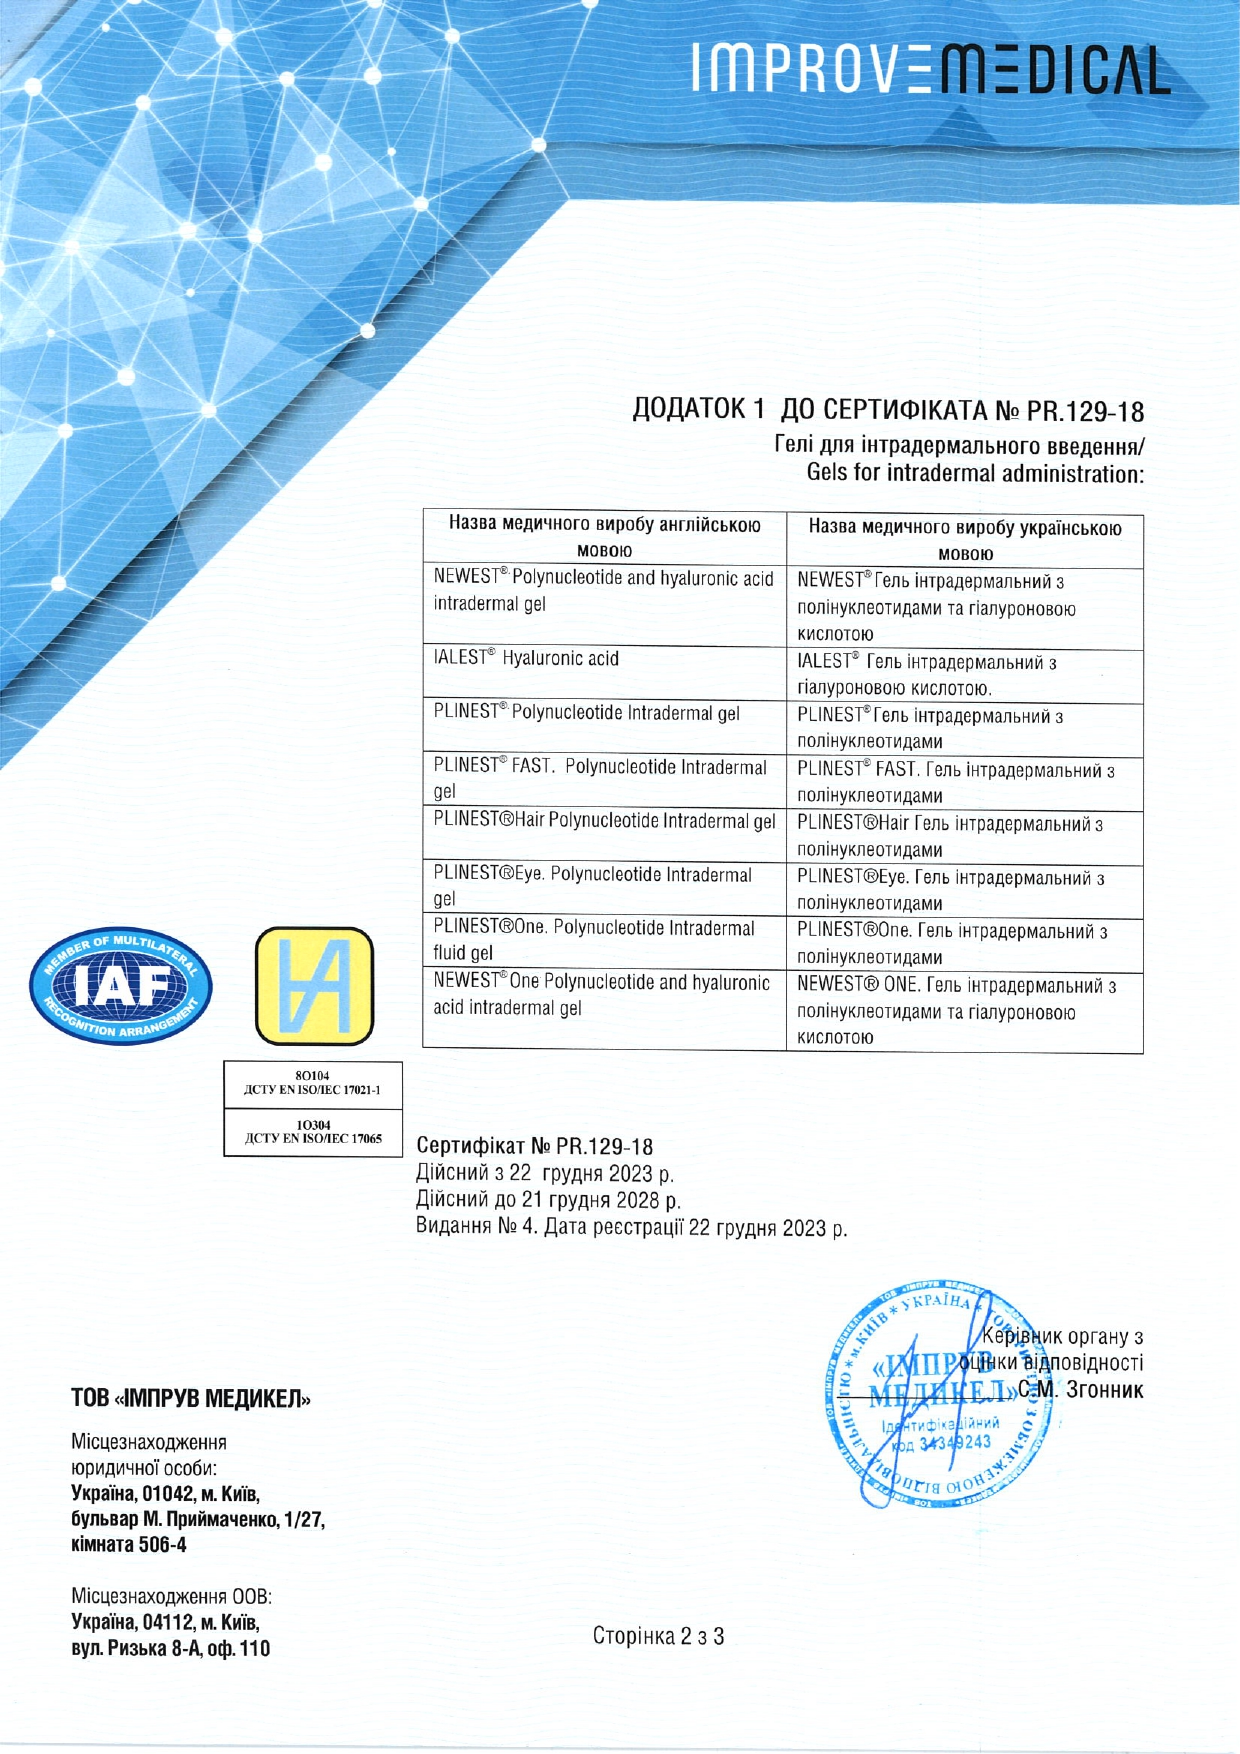 Mastelli препараты в Украине - изображение сертификата 2